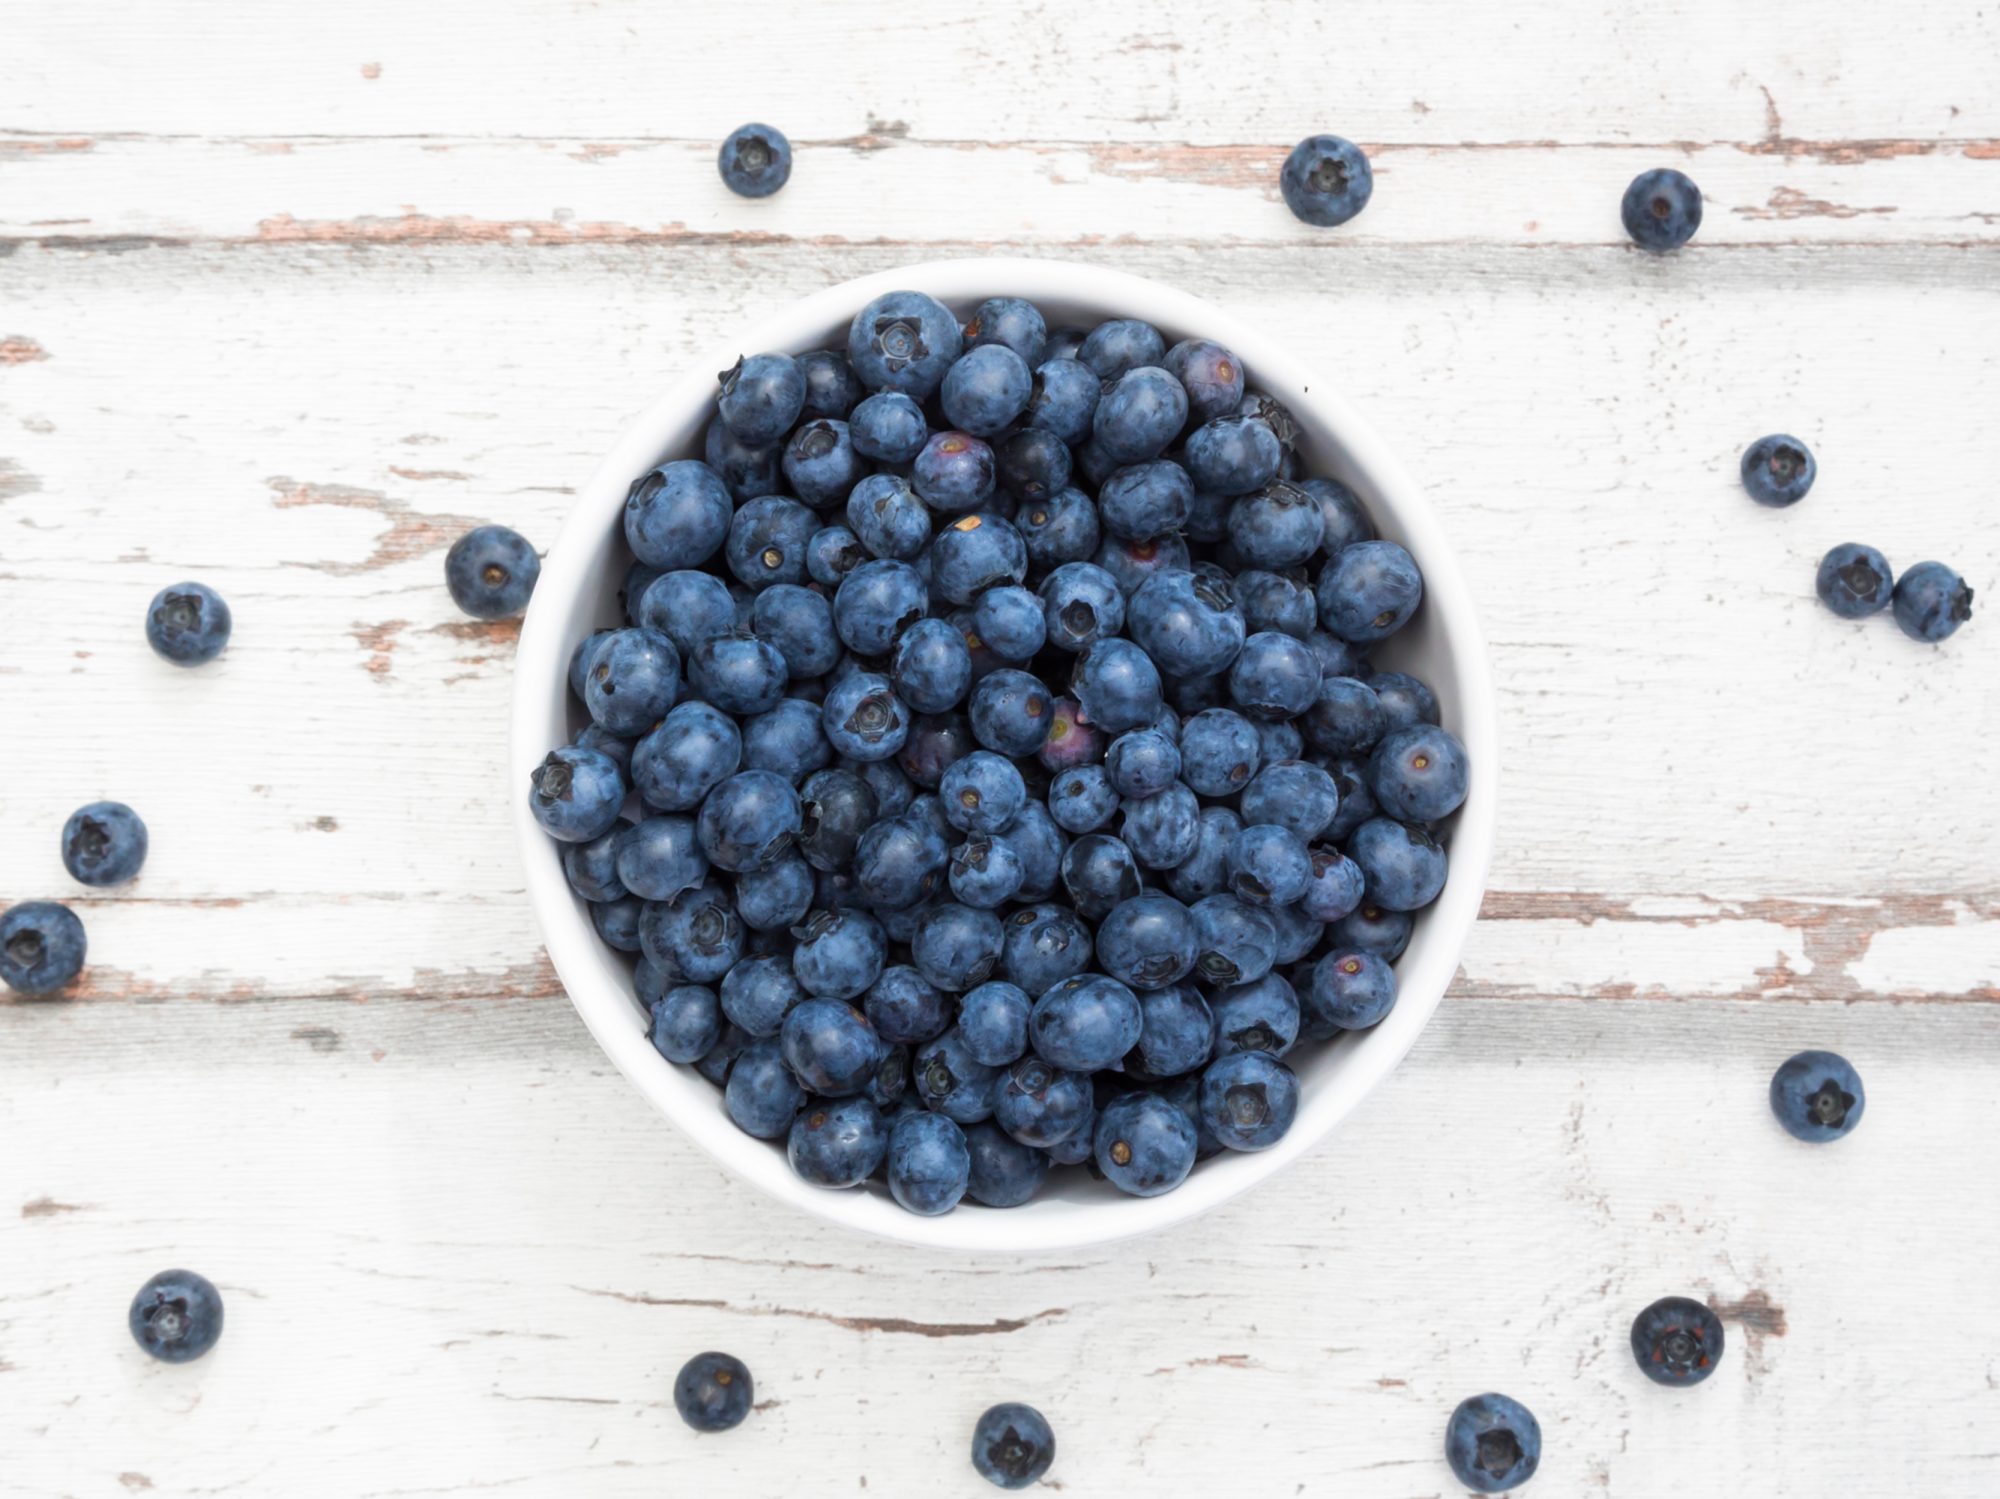 Blueberries for Blueberry Cobbler